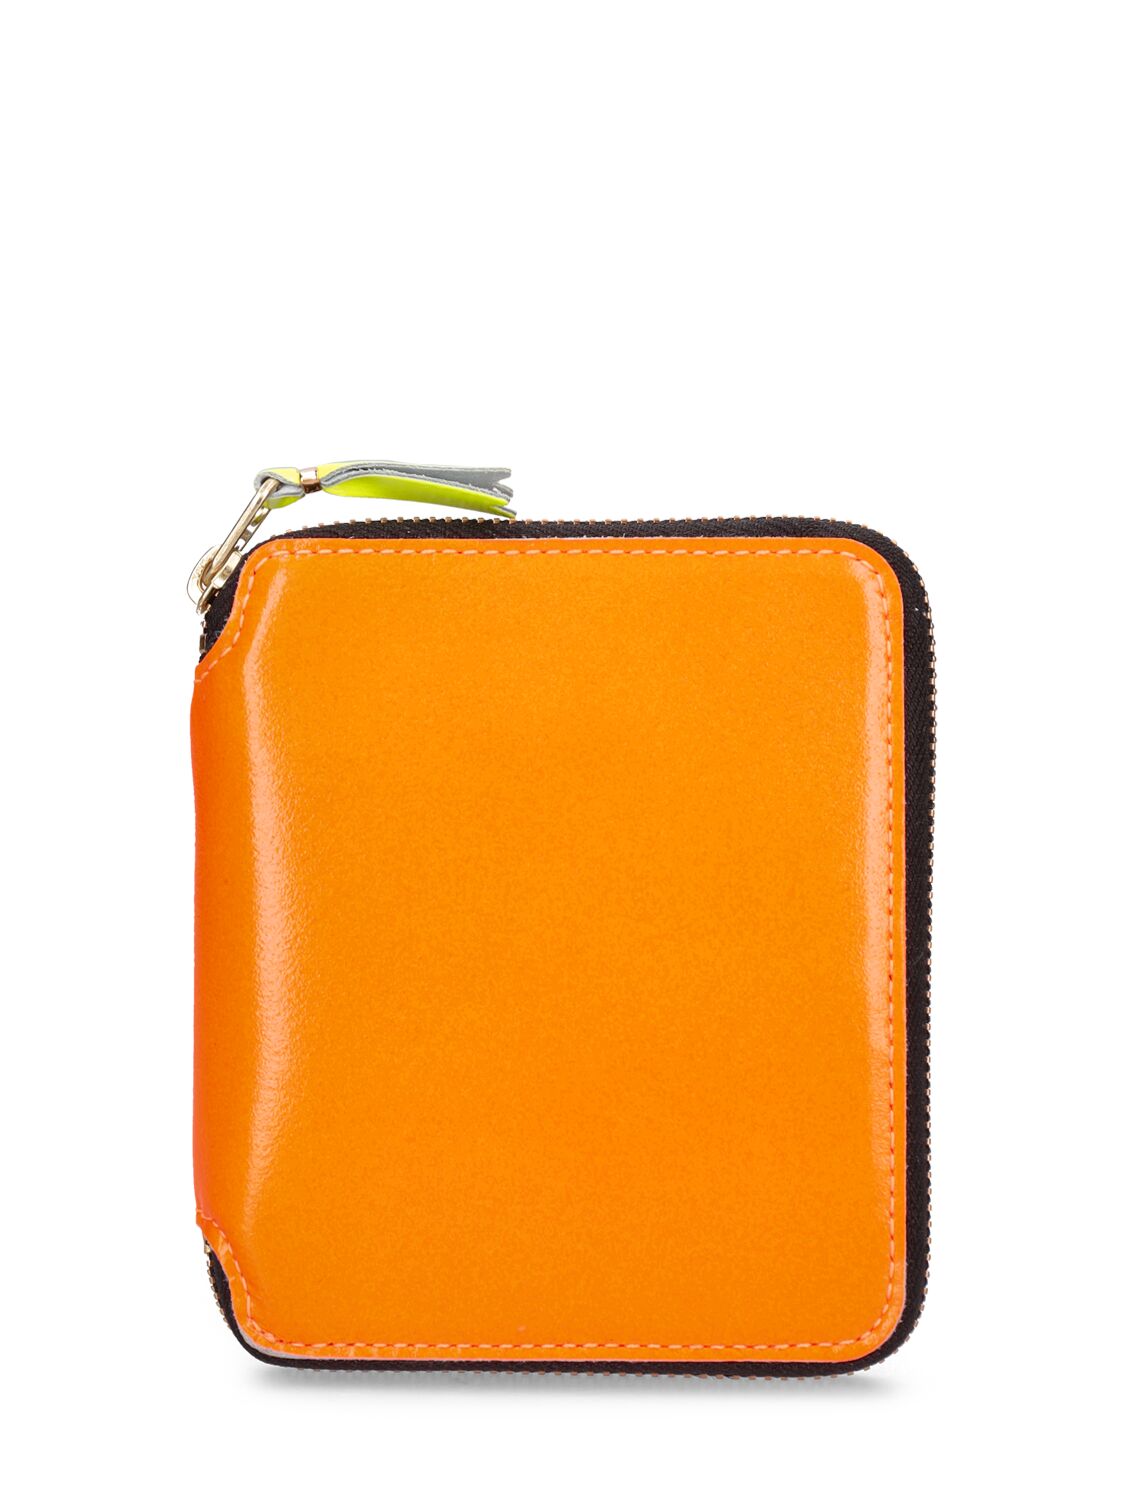 Comme Des Garçons Super Fluo Leather Wallet In Light Orange